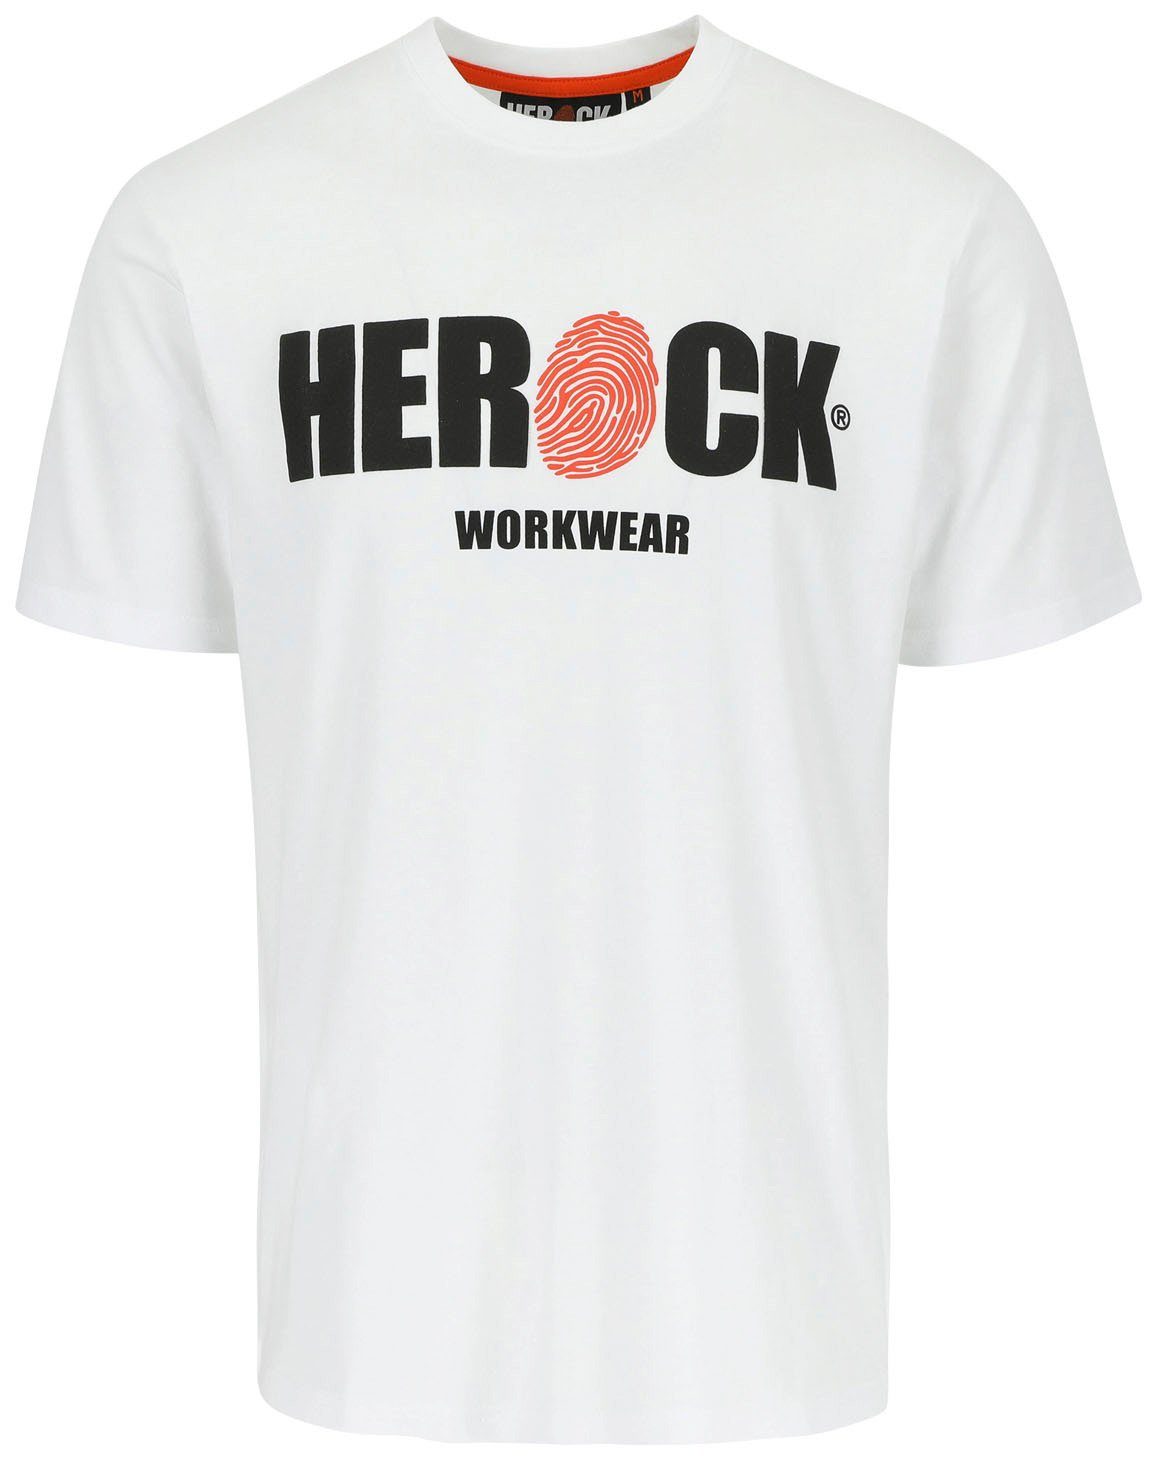 Herock T-Shirt ENI Baumwolle, Rundhals, mit Herock®-Aufdruck, angenehmes Tragegefühl weiß